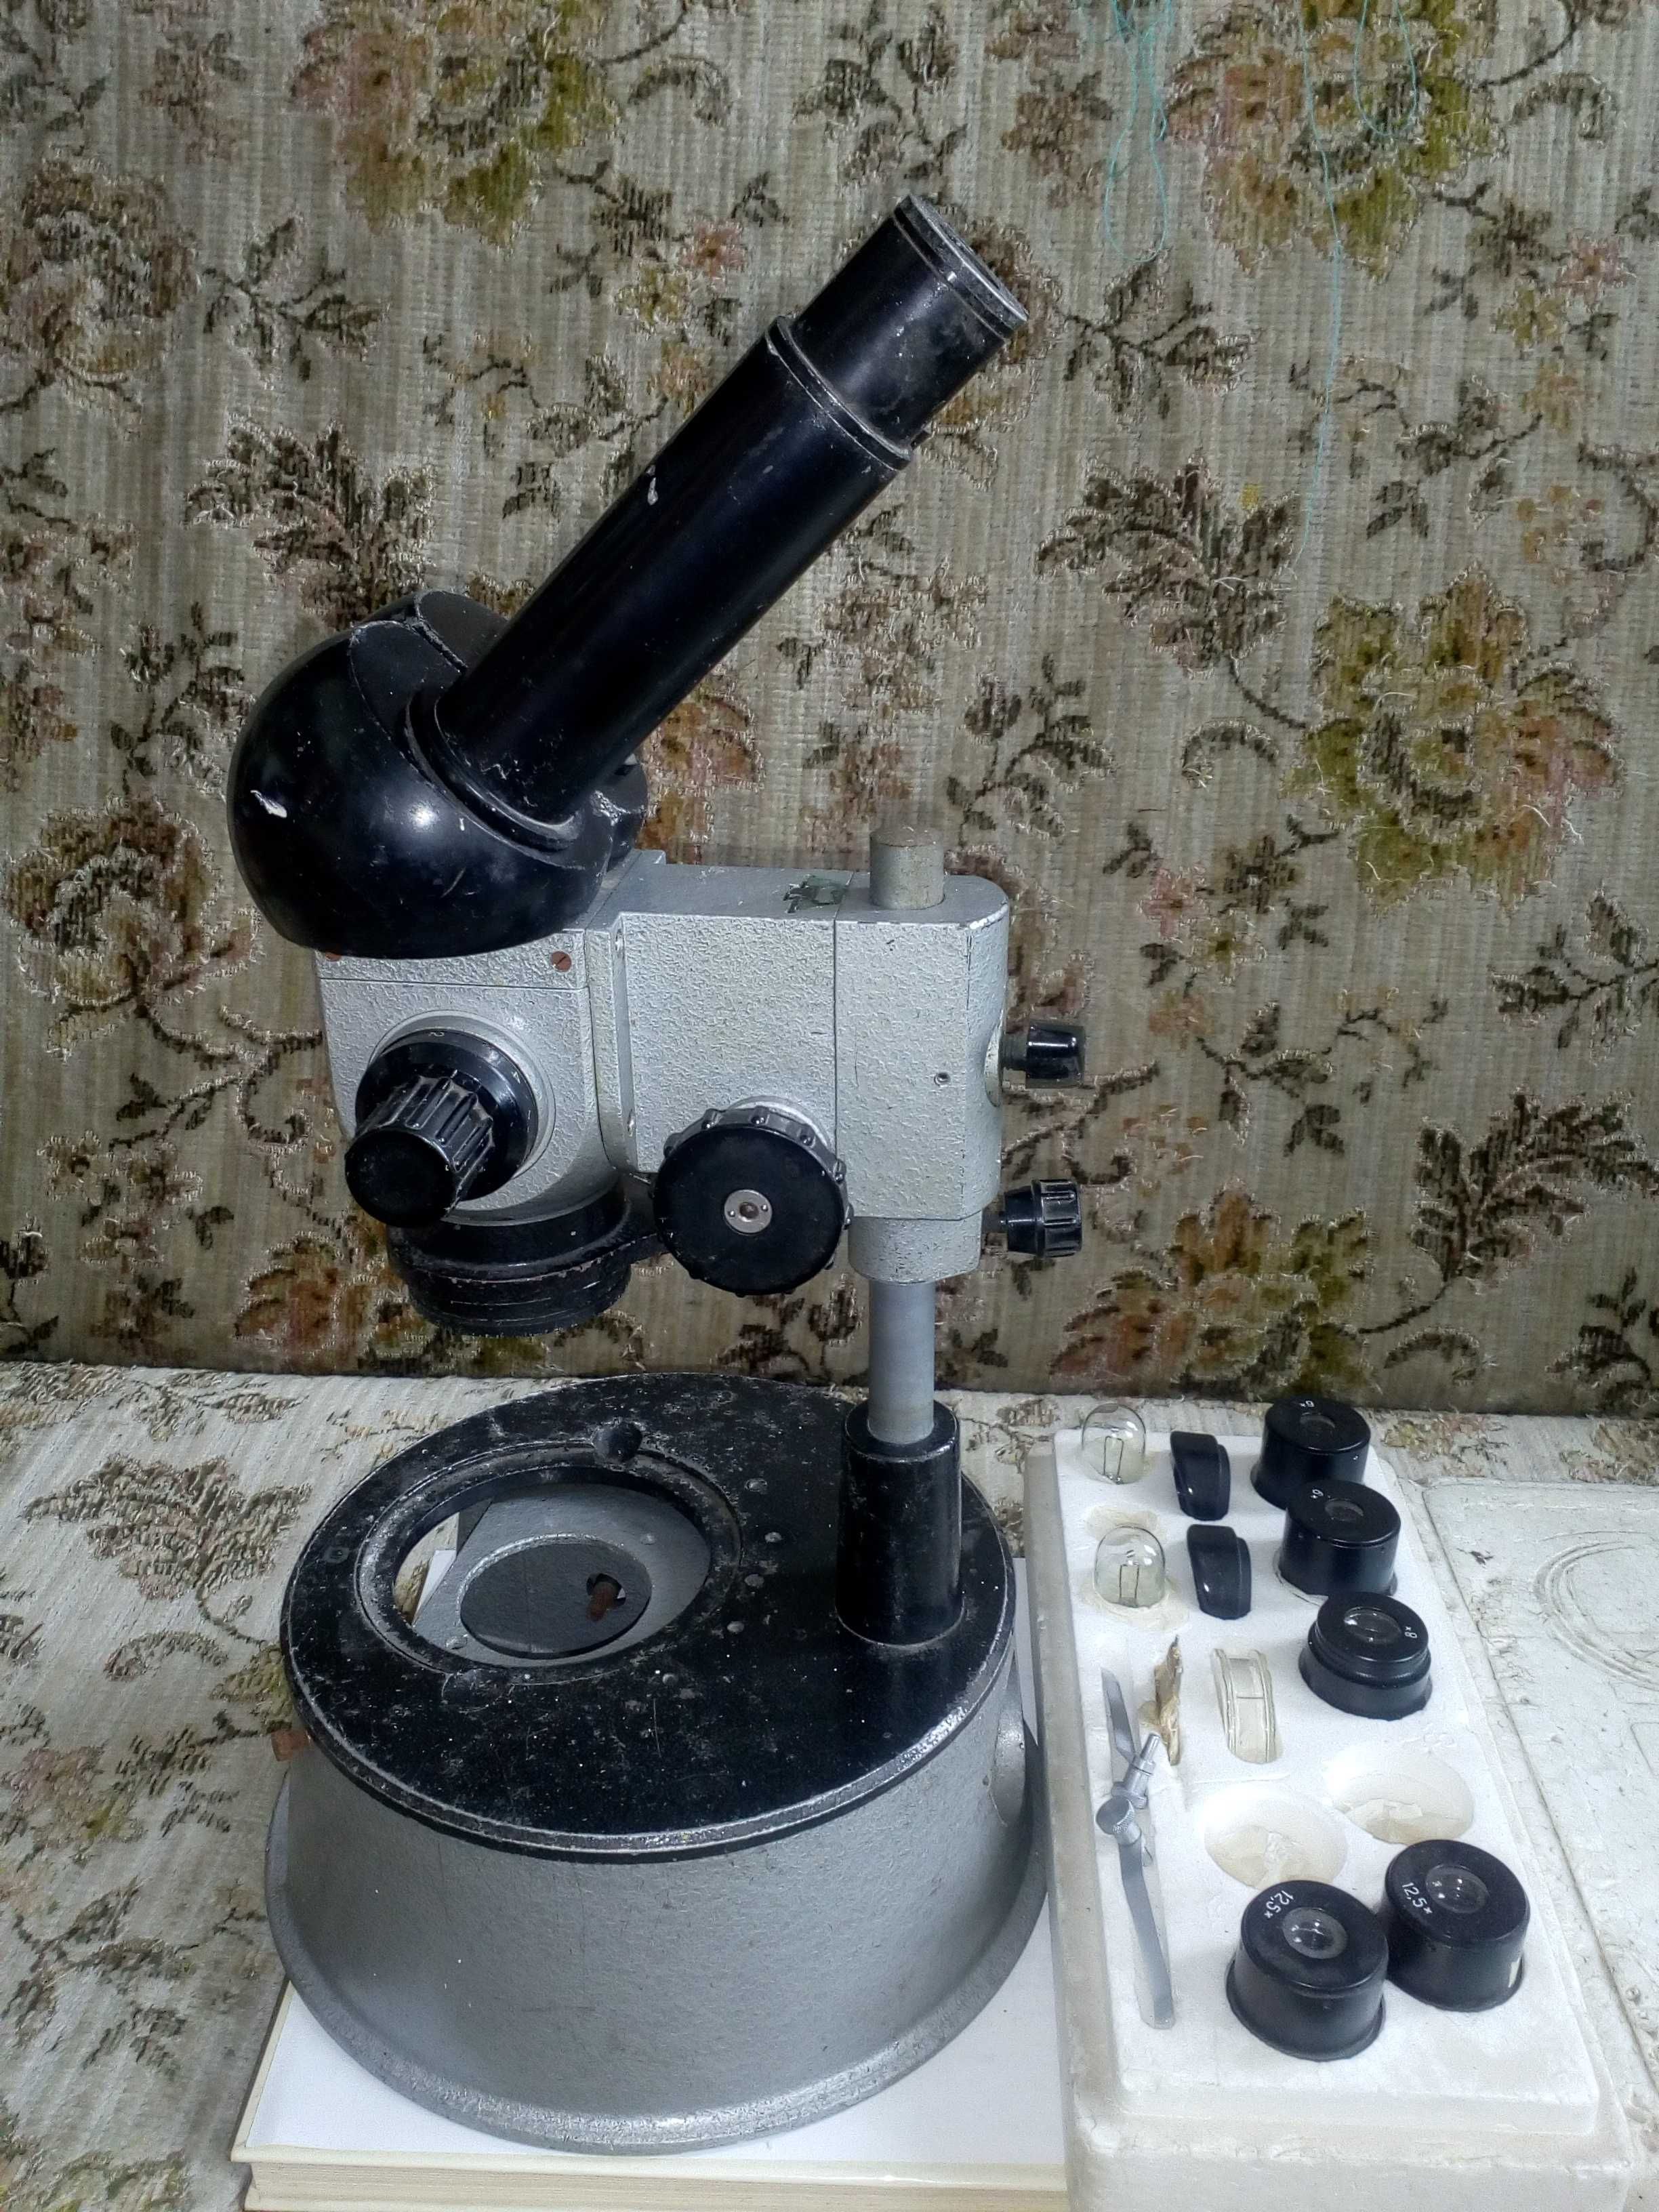 Микроскоп МБС-1 с набором оптики